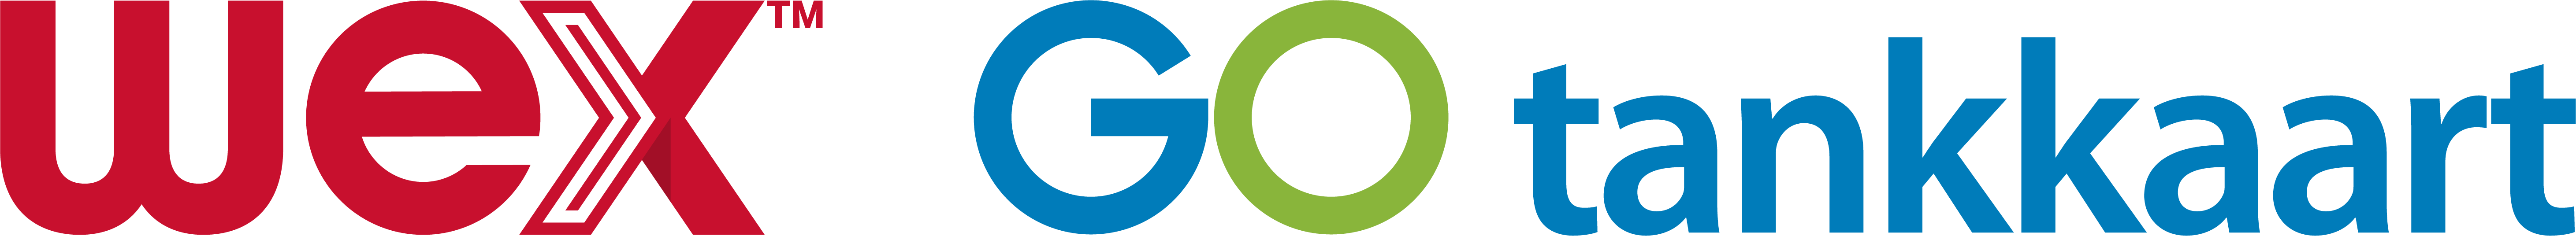 WEX GO tankkaart logo